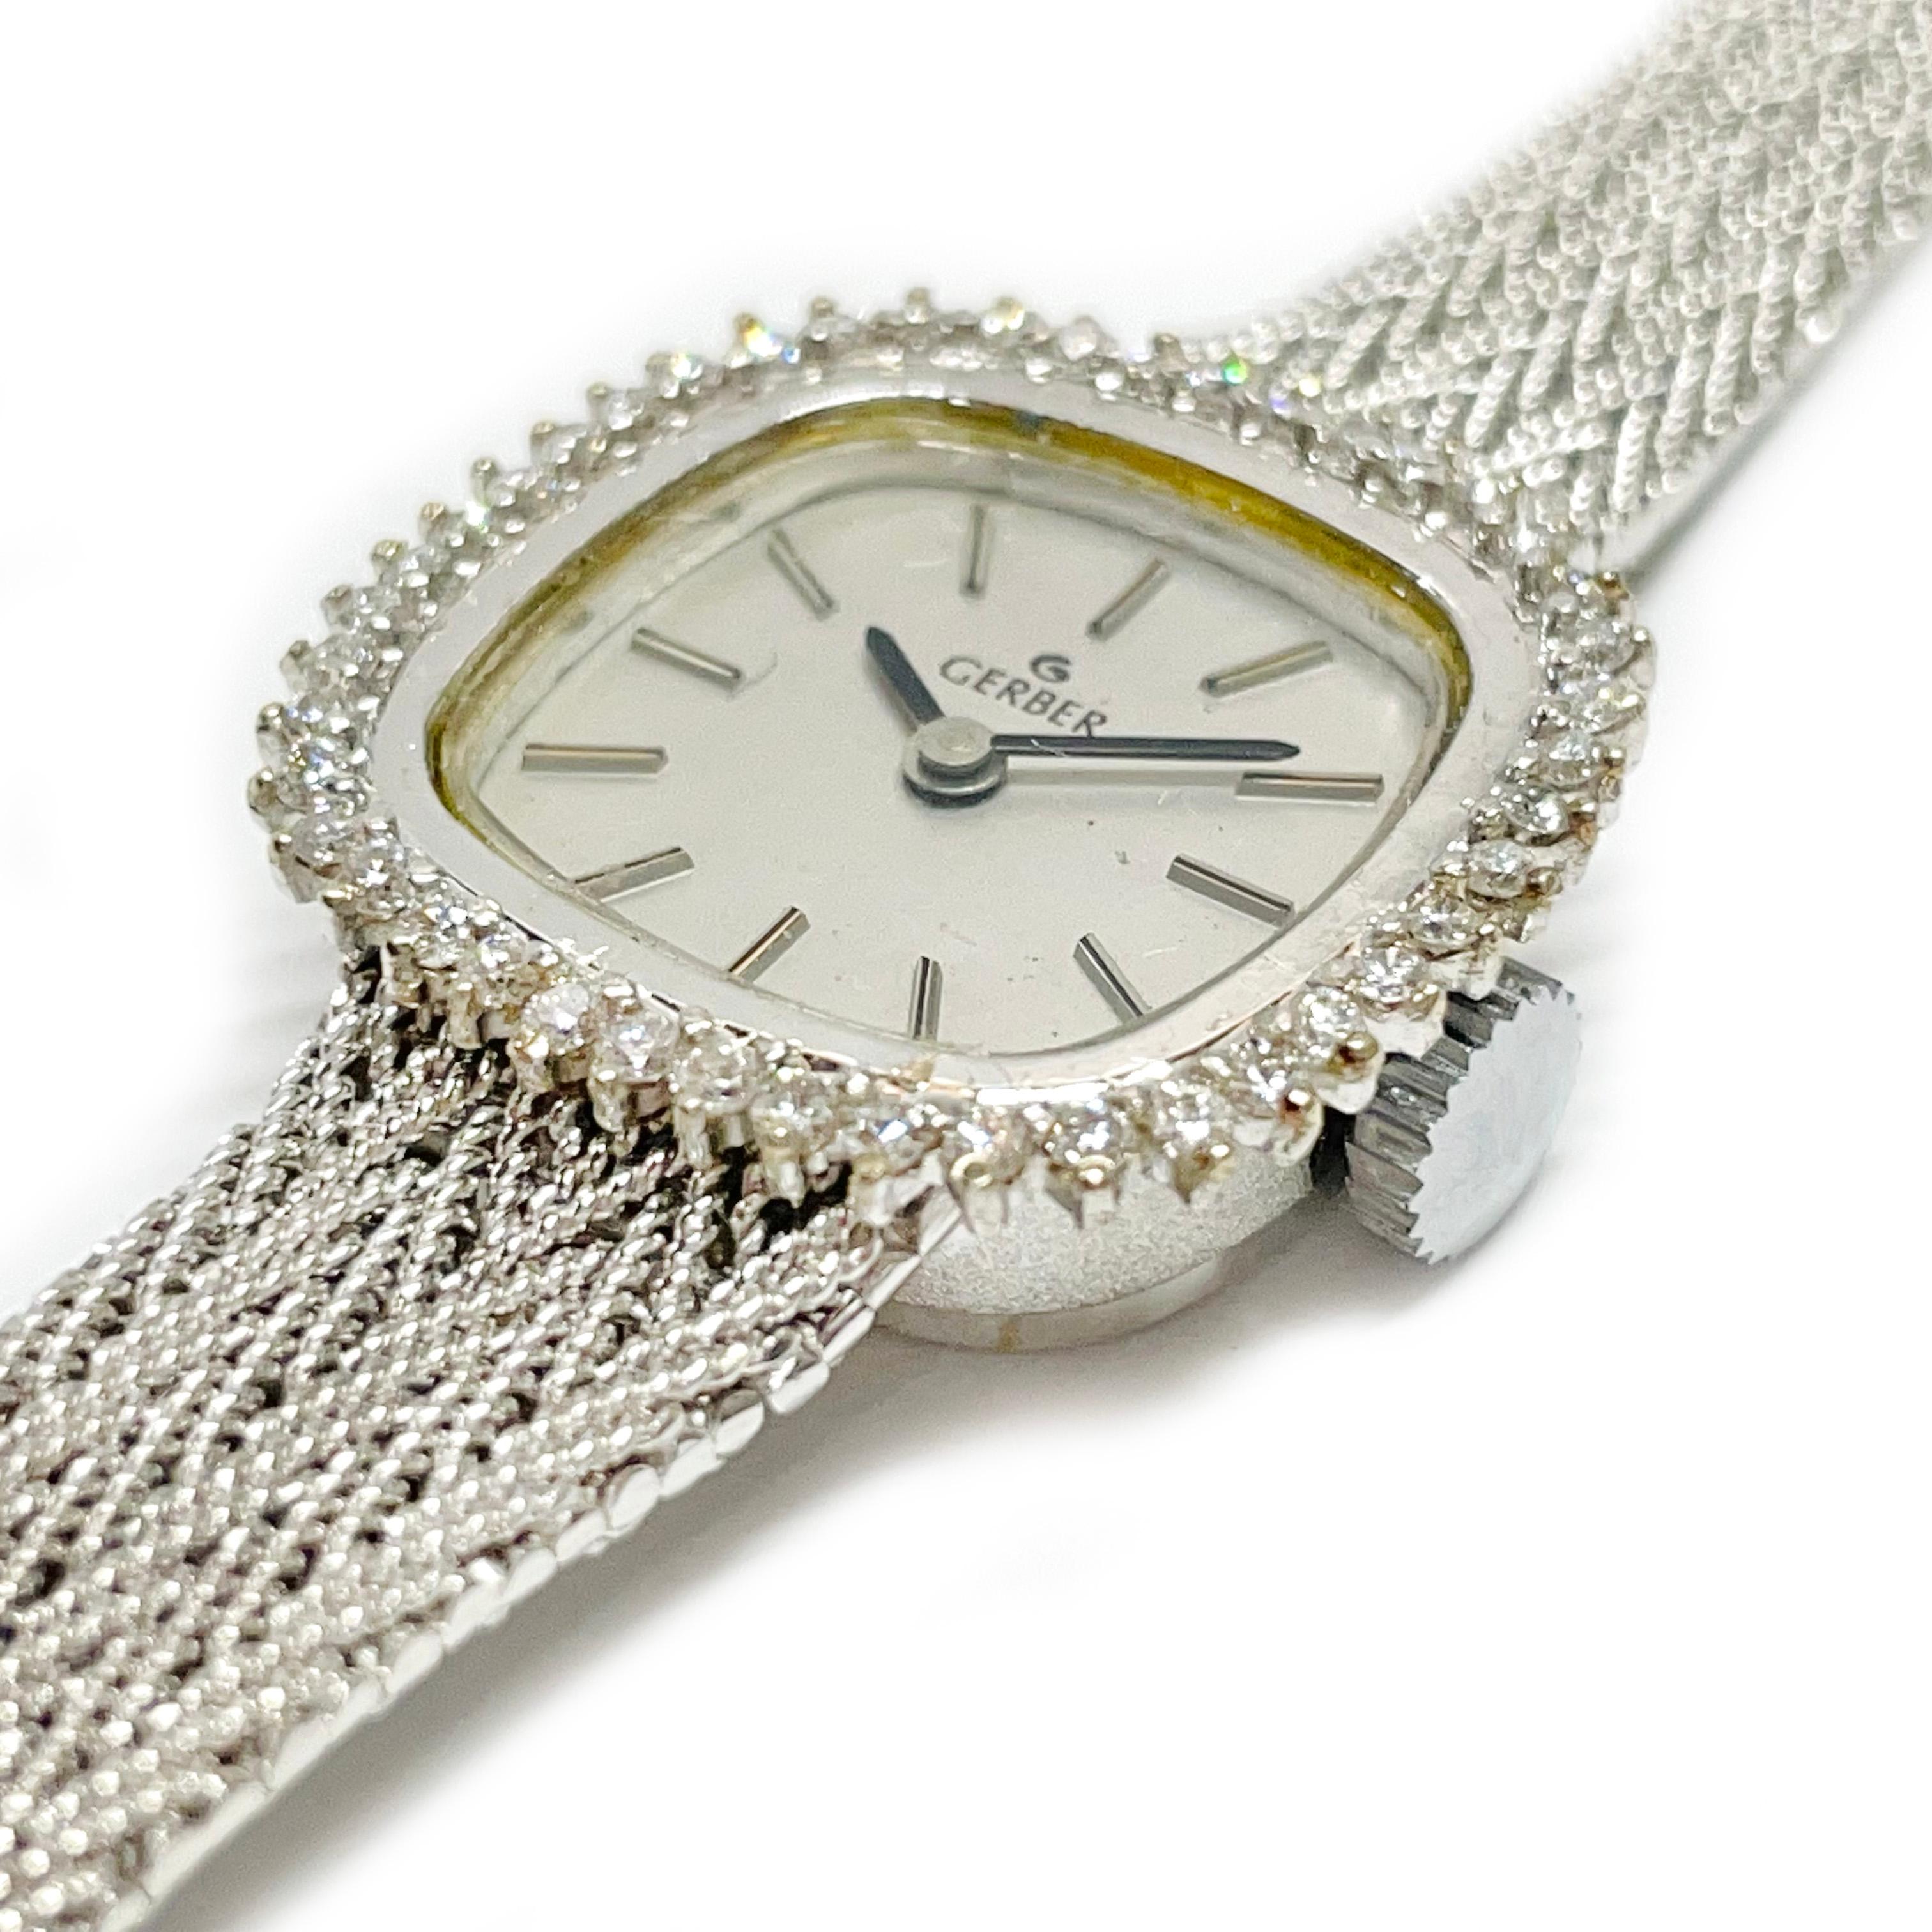 Montre-bracelet vintage Gerber en or blanc 14 carats, diamant, mouvement suisse. La montre présente un cadran argenté, des aiguilles noires pour les heures et les minutes, et un entourage de diamants. Environ quarante-quatre diamants ronds sertis à